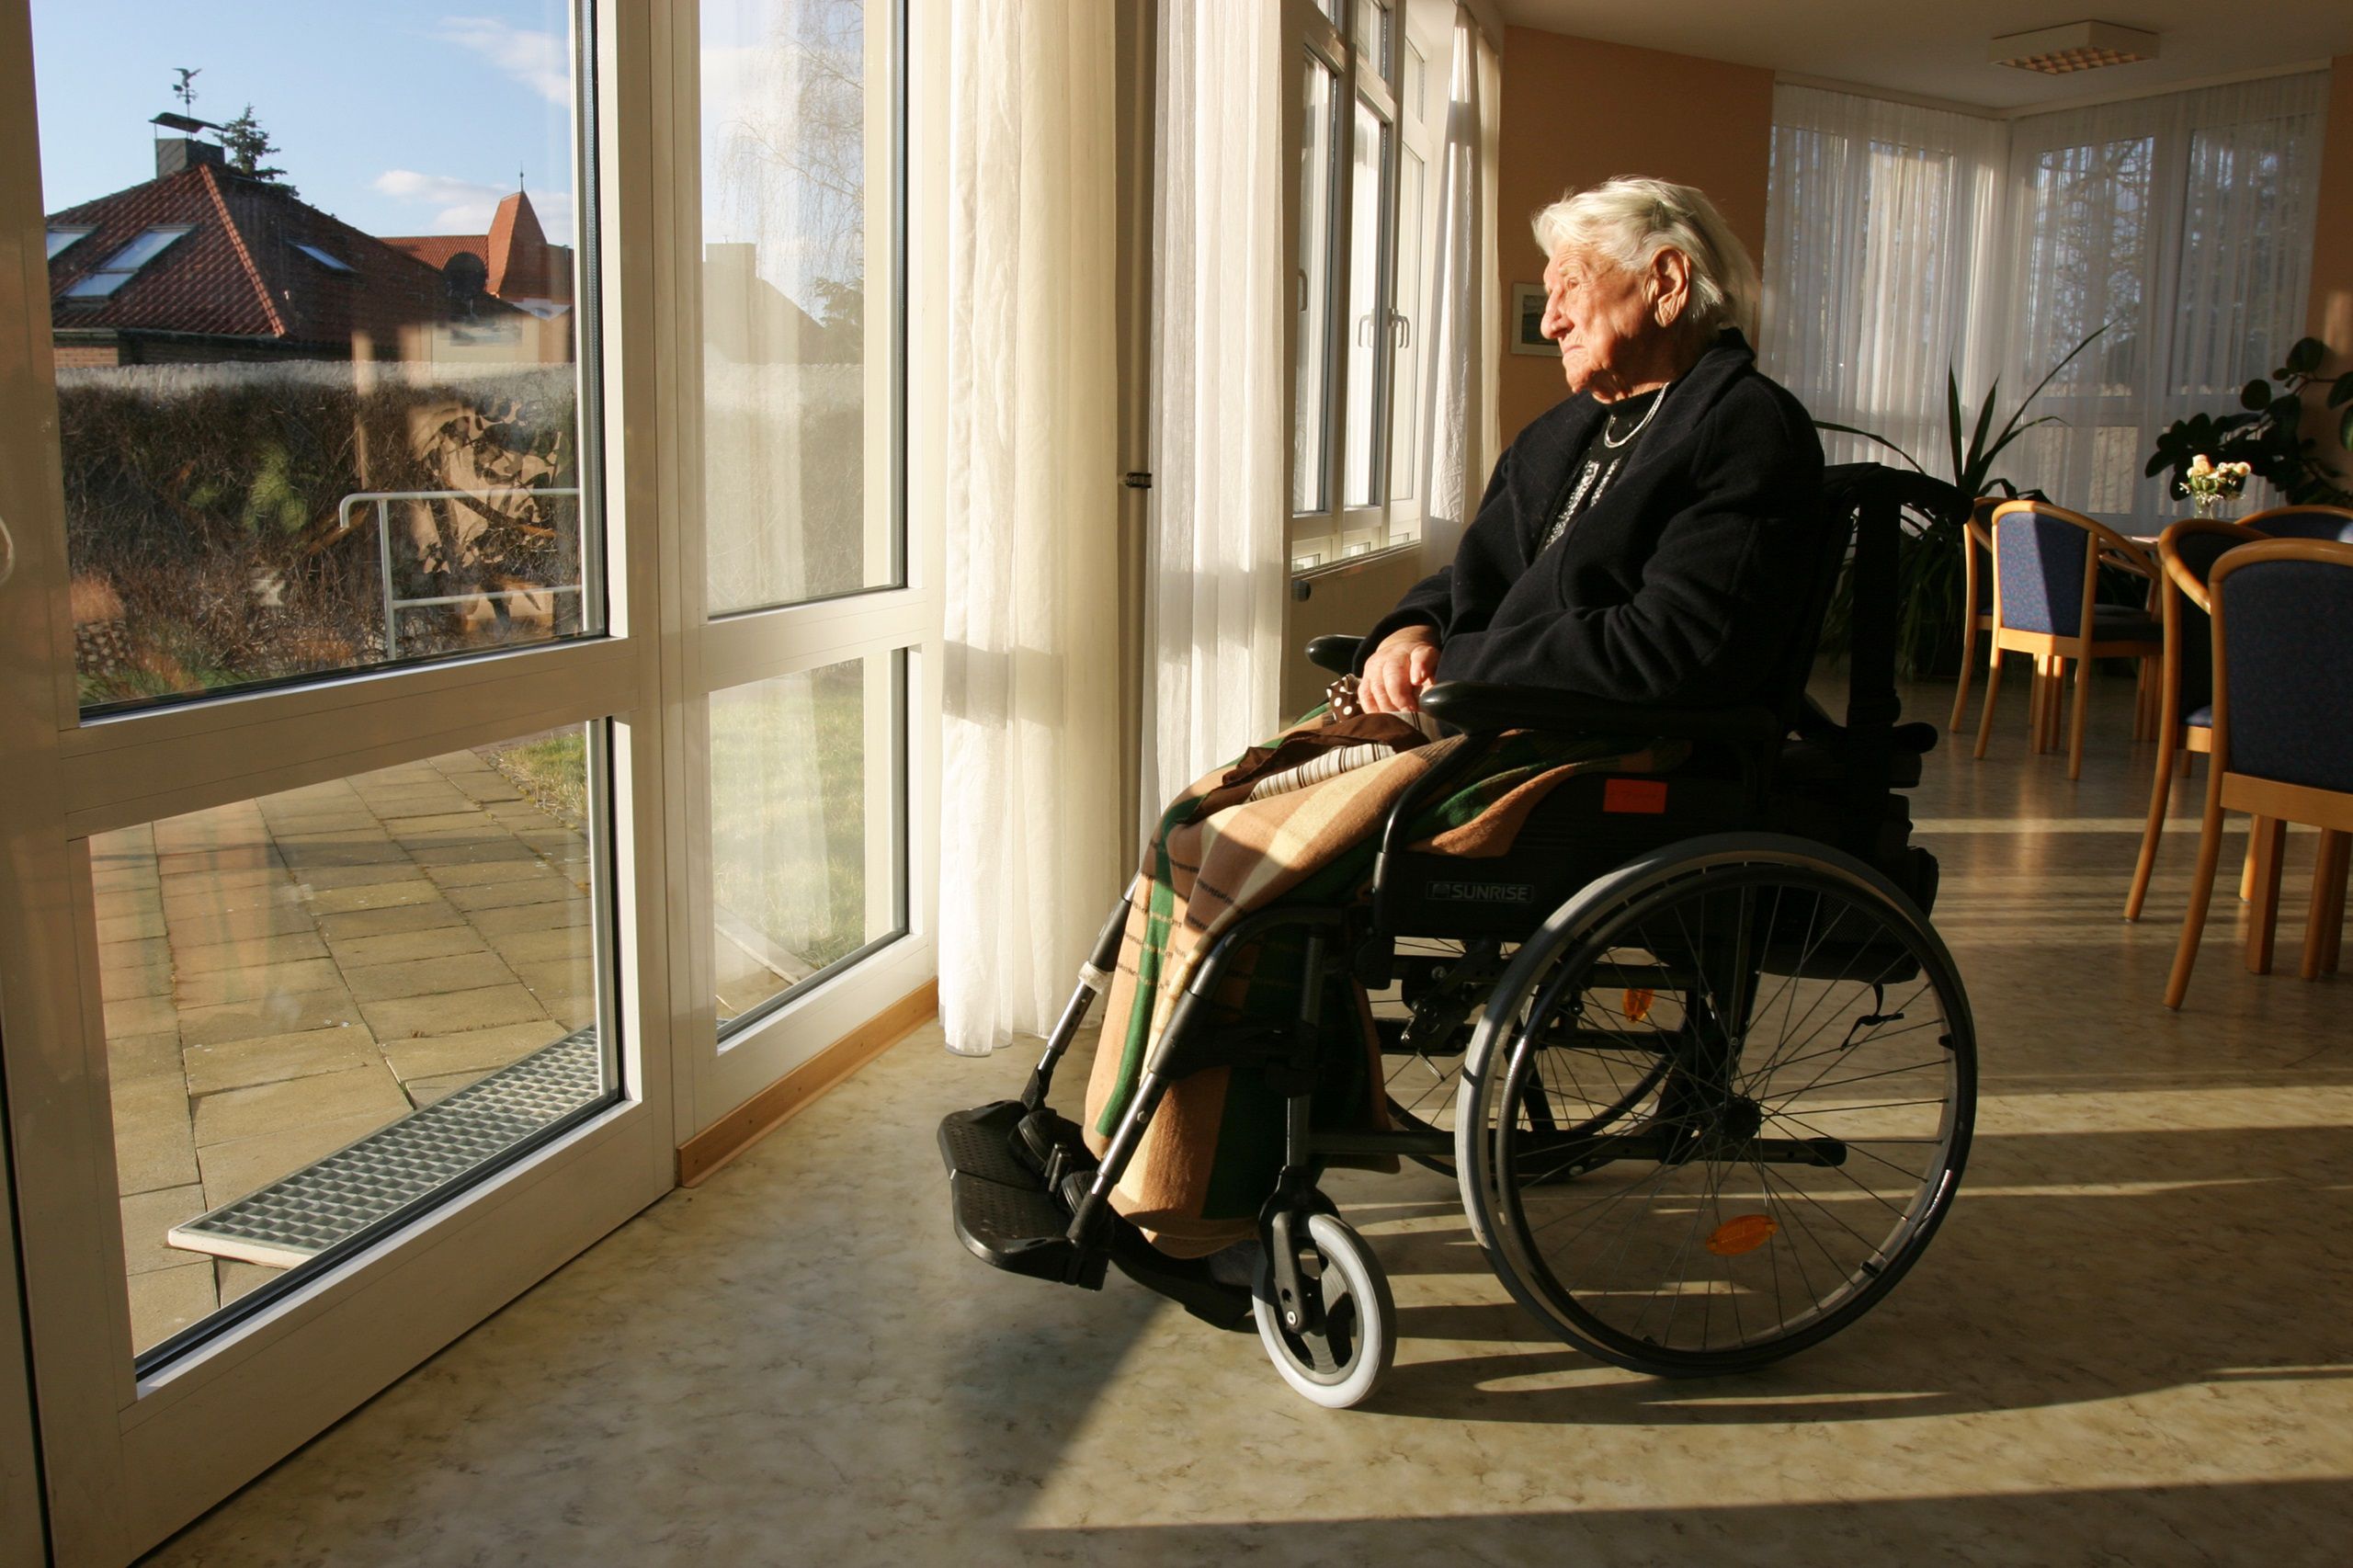 Schmerzmanagement: So geht es alten Menschen in Heimen - Arbeit&Wirtschaft